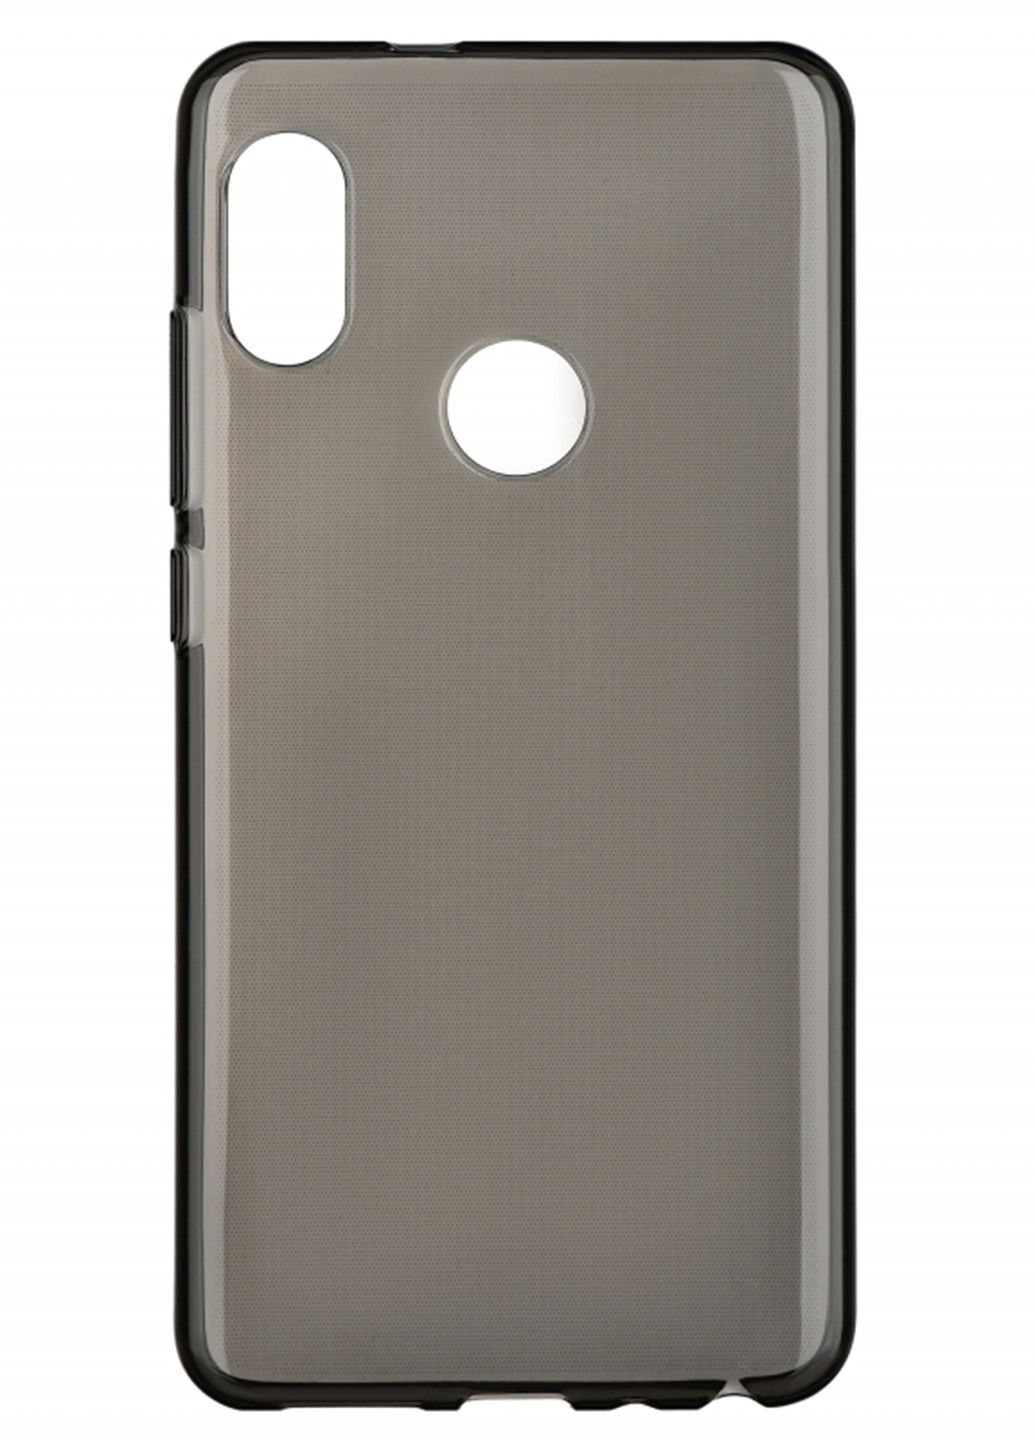 Чехол Basic 2E для Xiaomi Redmi Note 5, Crystal, Black комбинированный